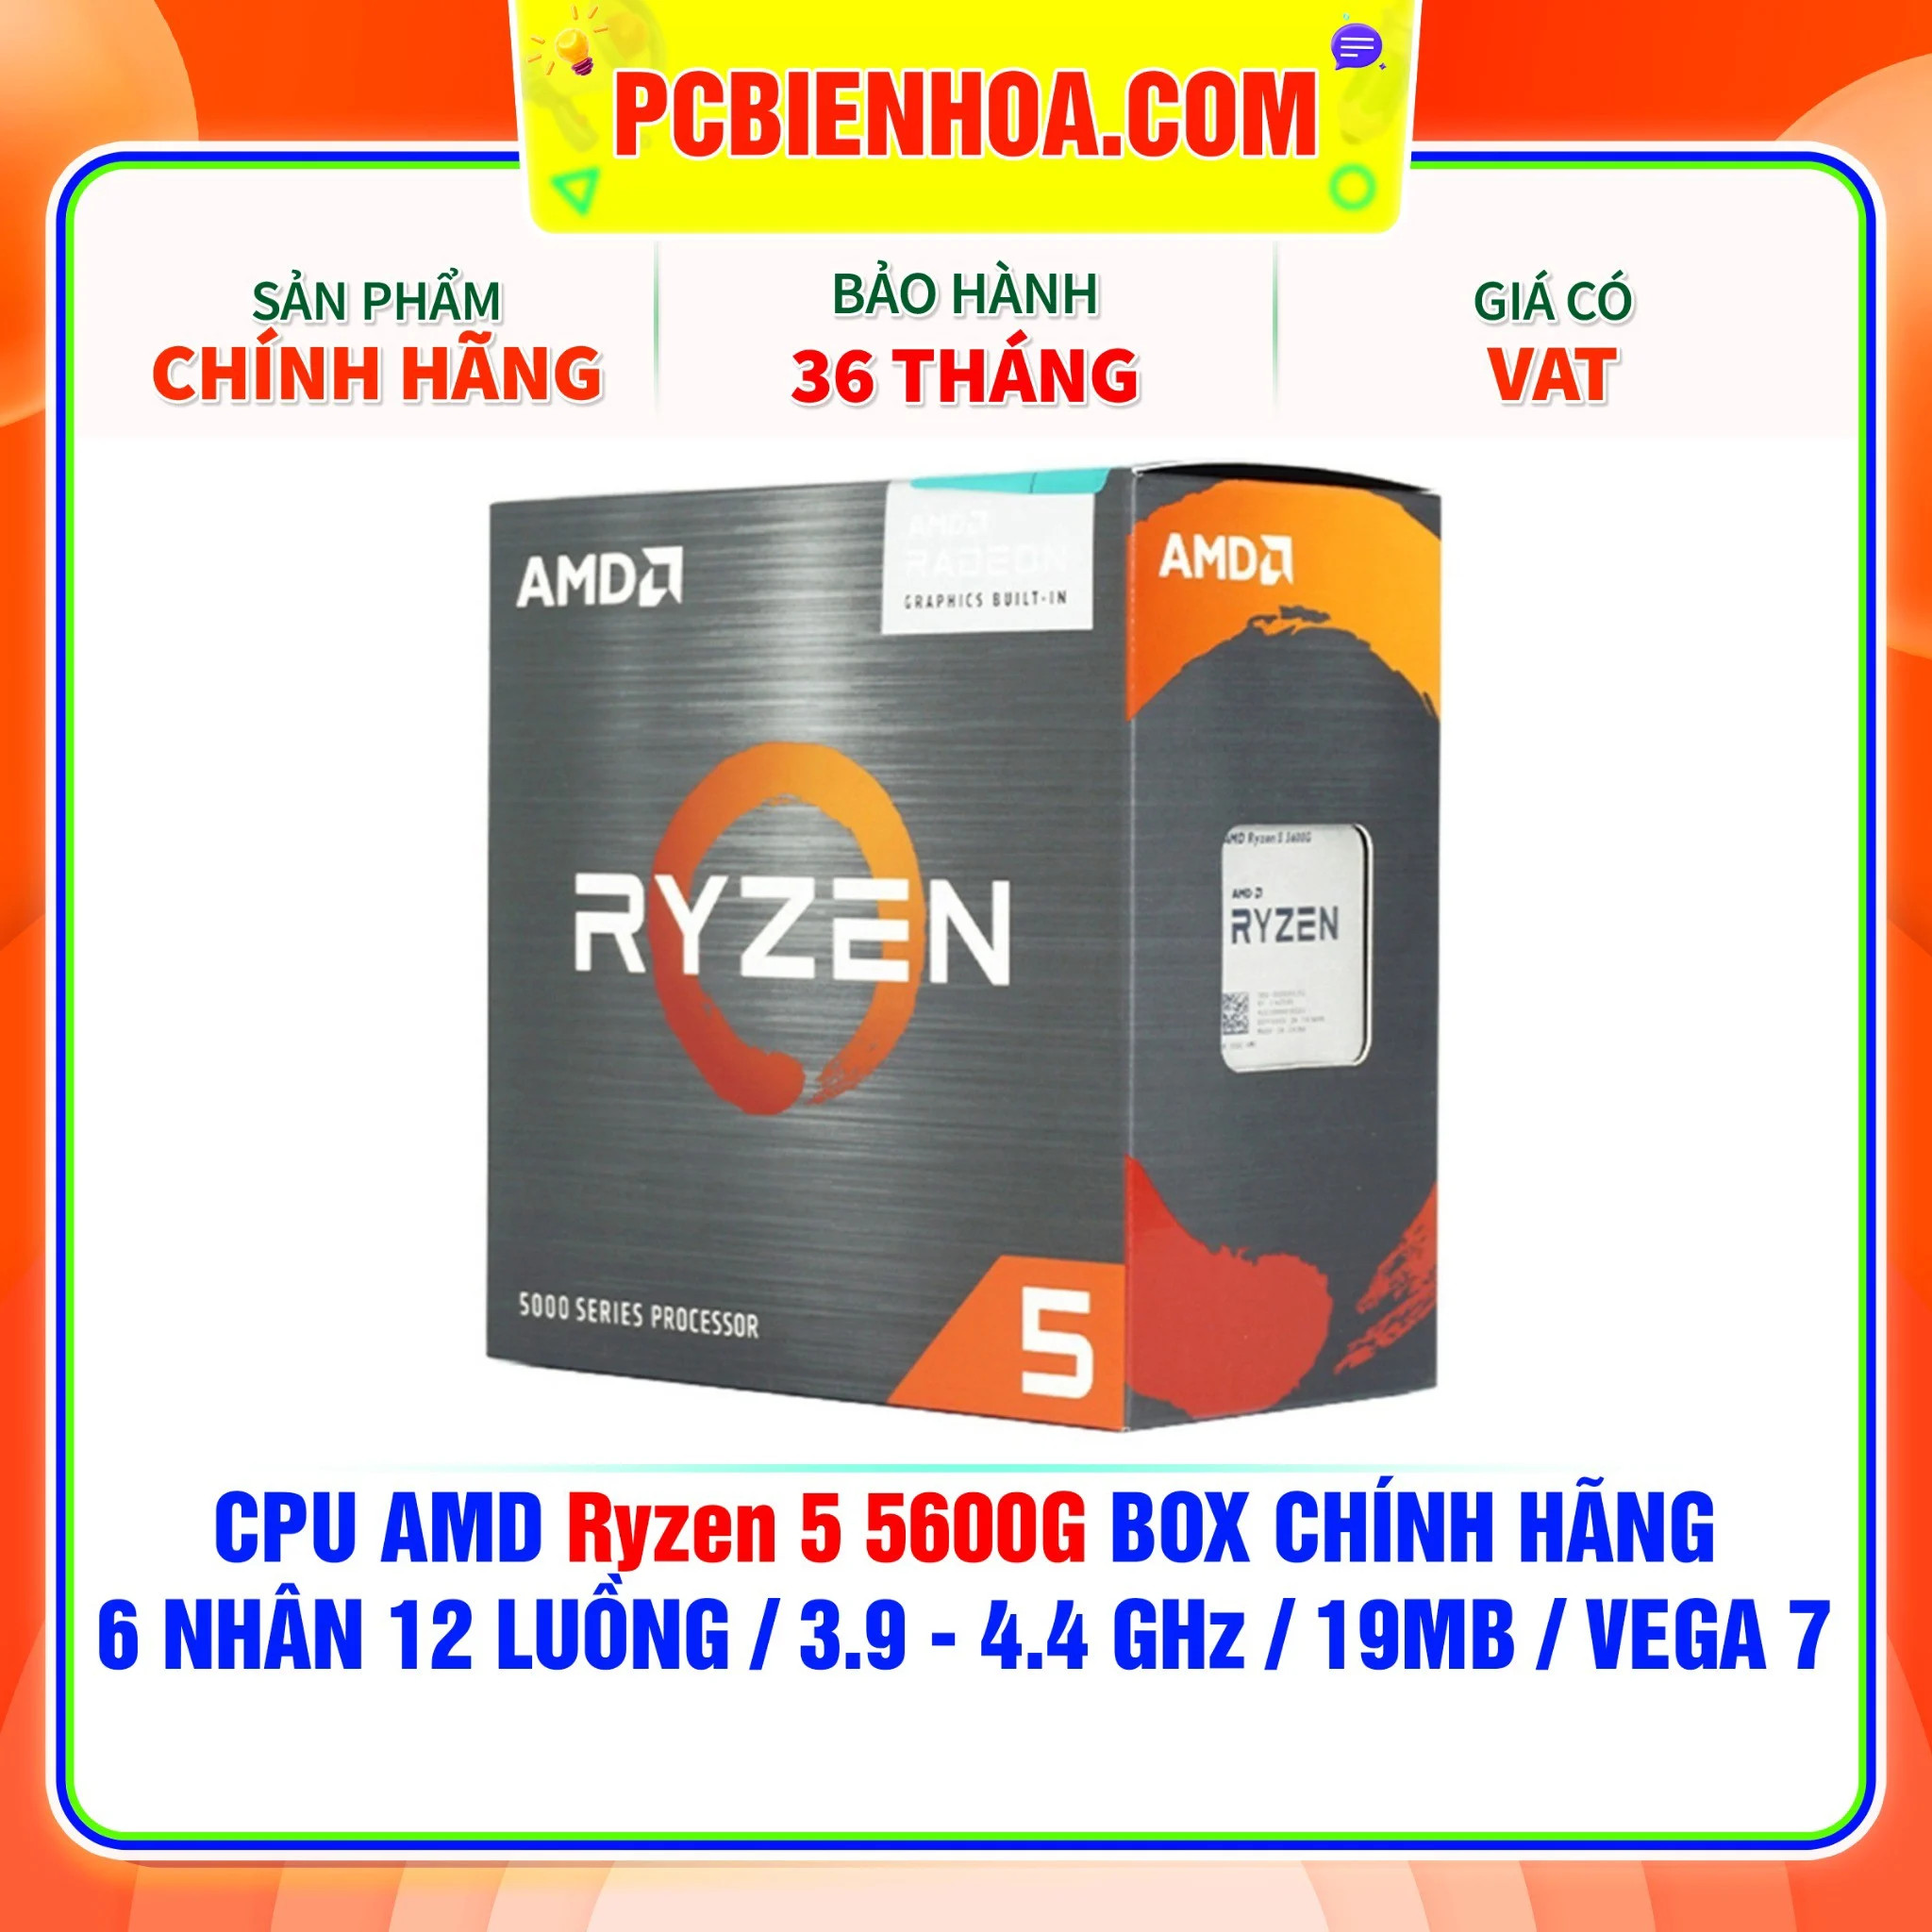 CPU AMD RYZEN 5 5600G- AM4 - Chính hãng mới 100% bảo hành 36 tháng